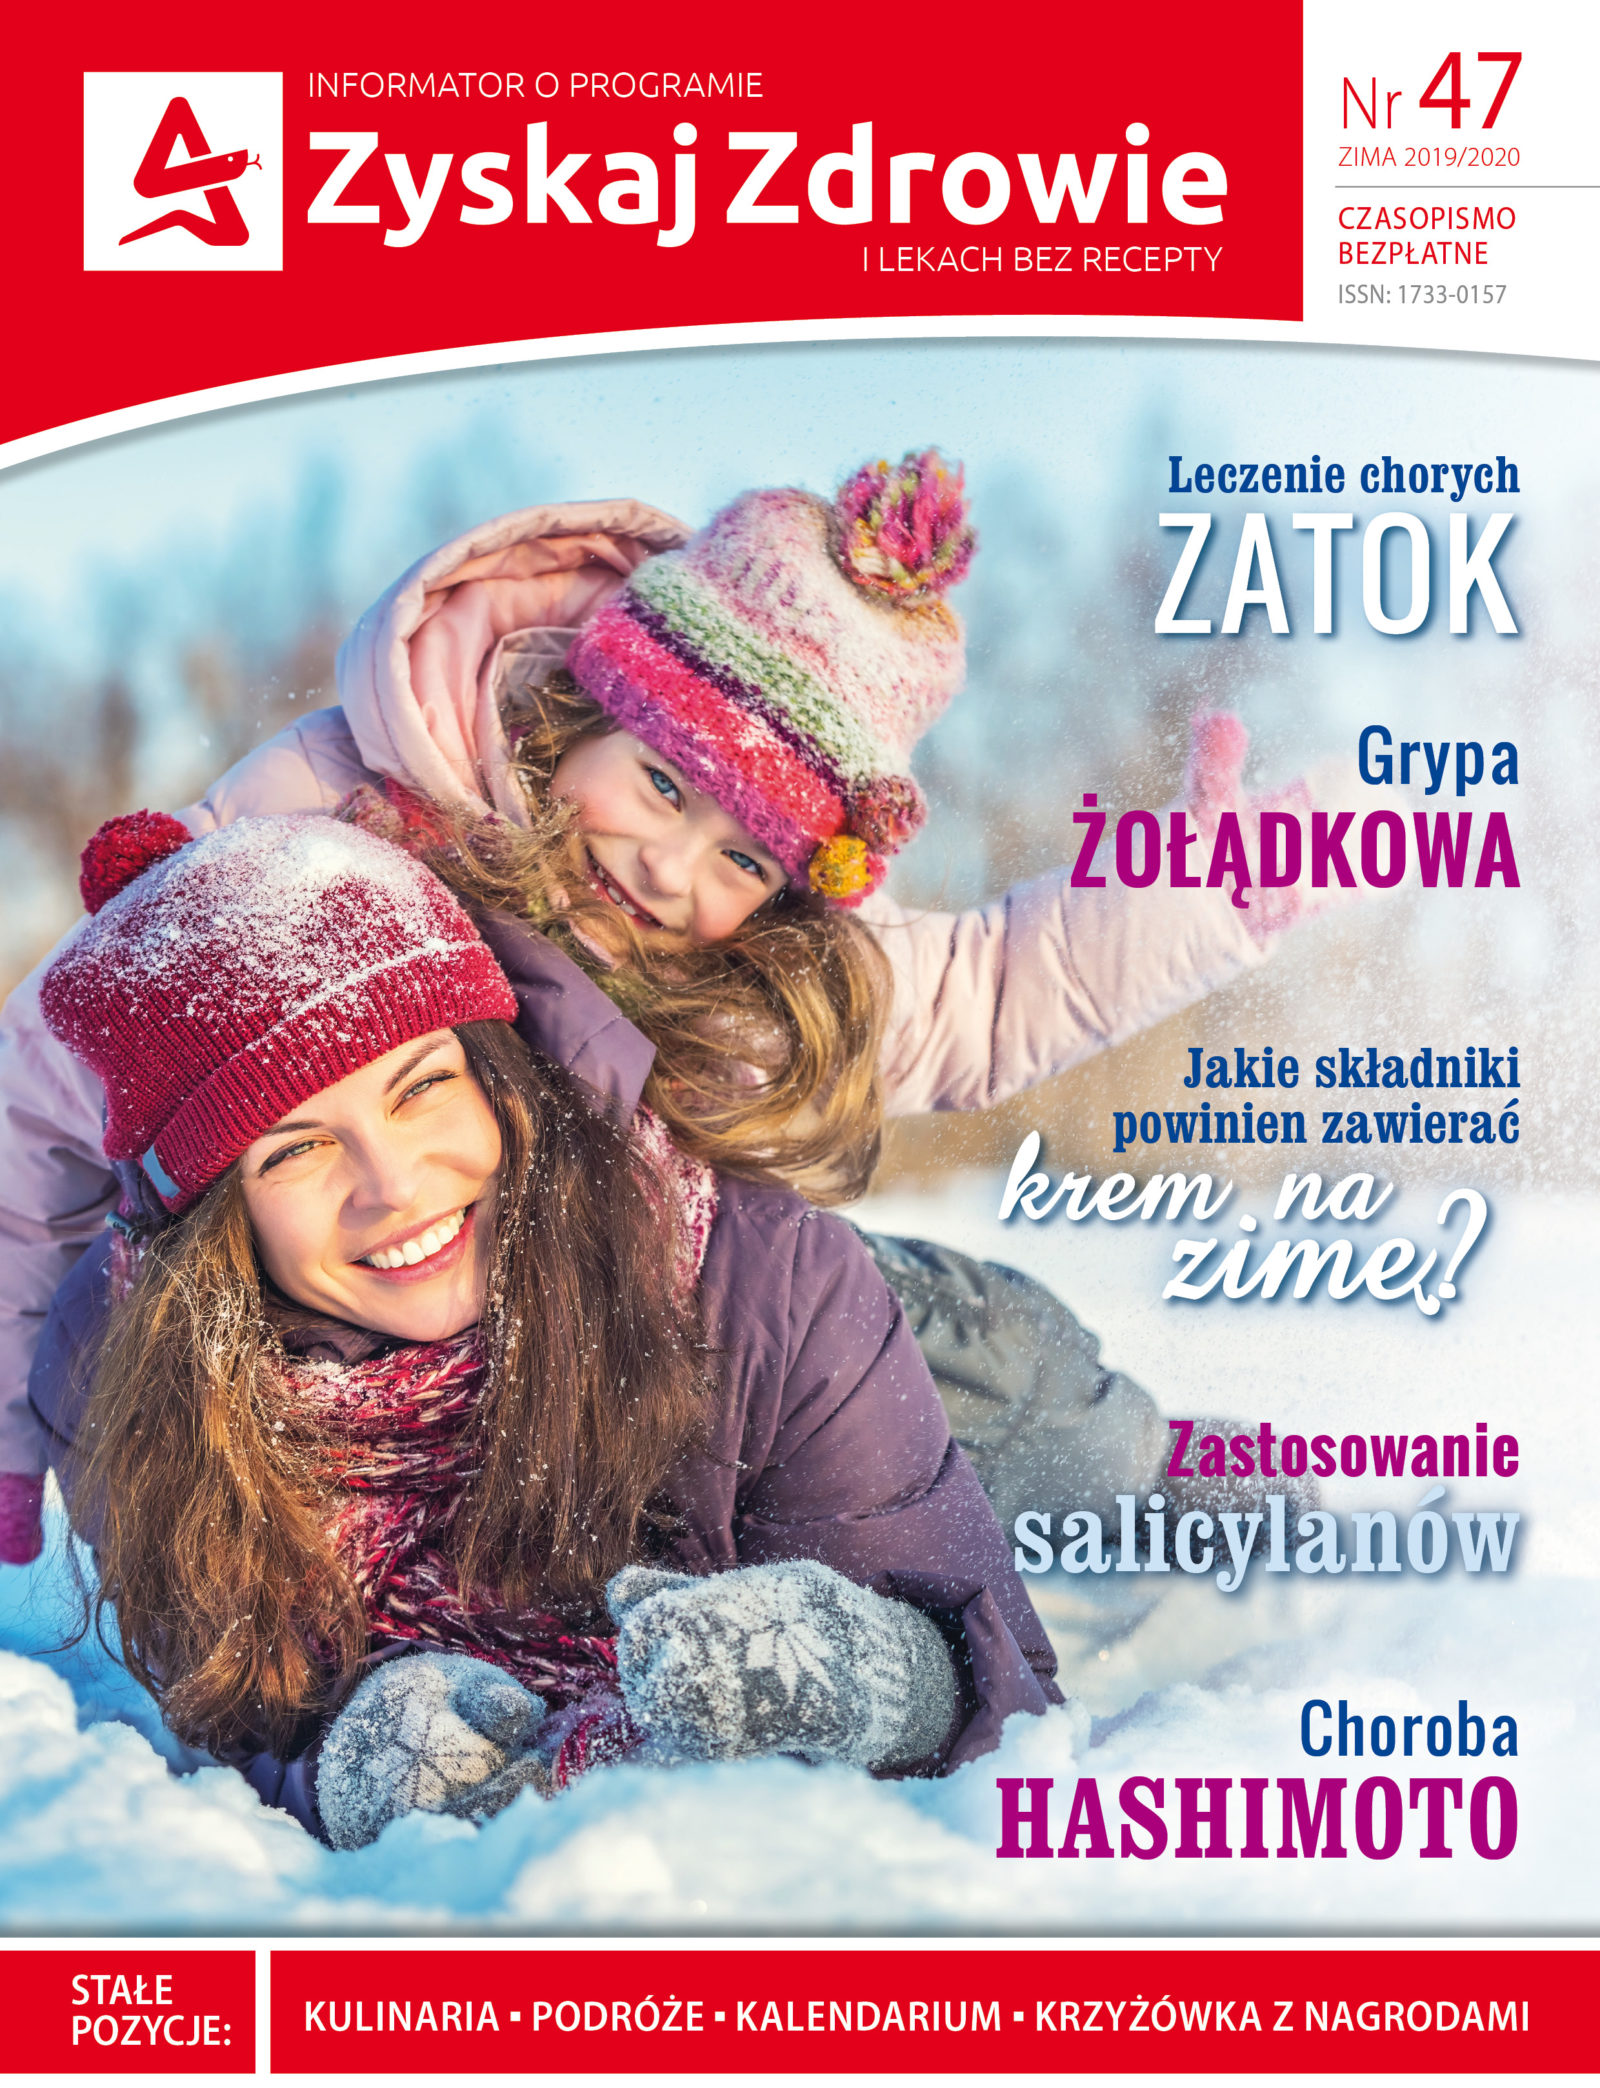 Zimowe wydanie czasopisma popularnonaukowego